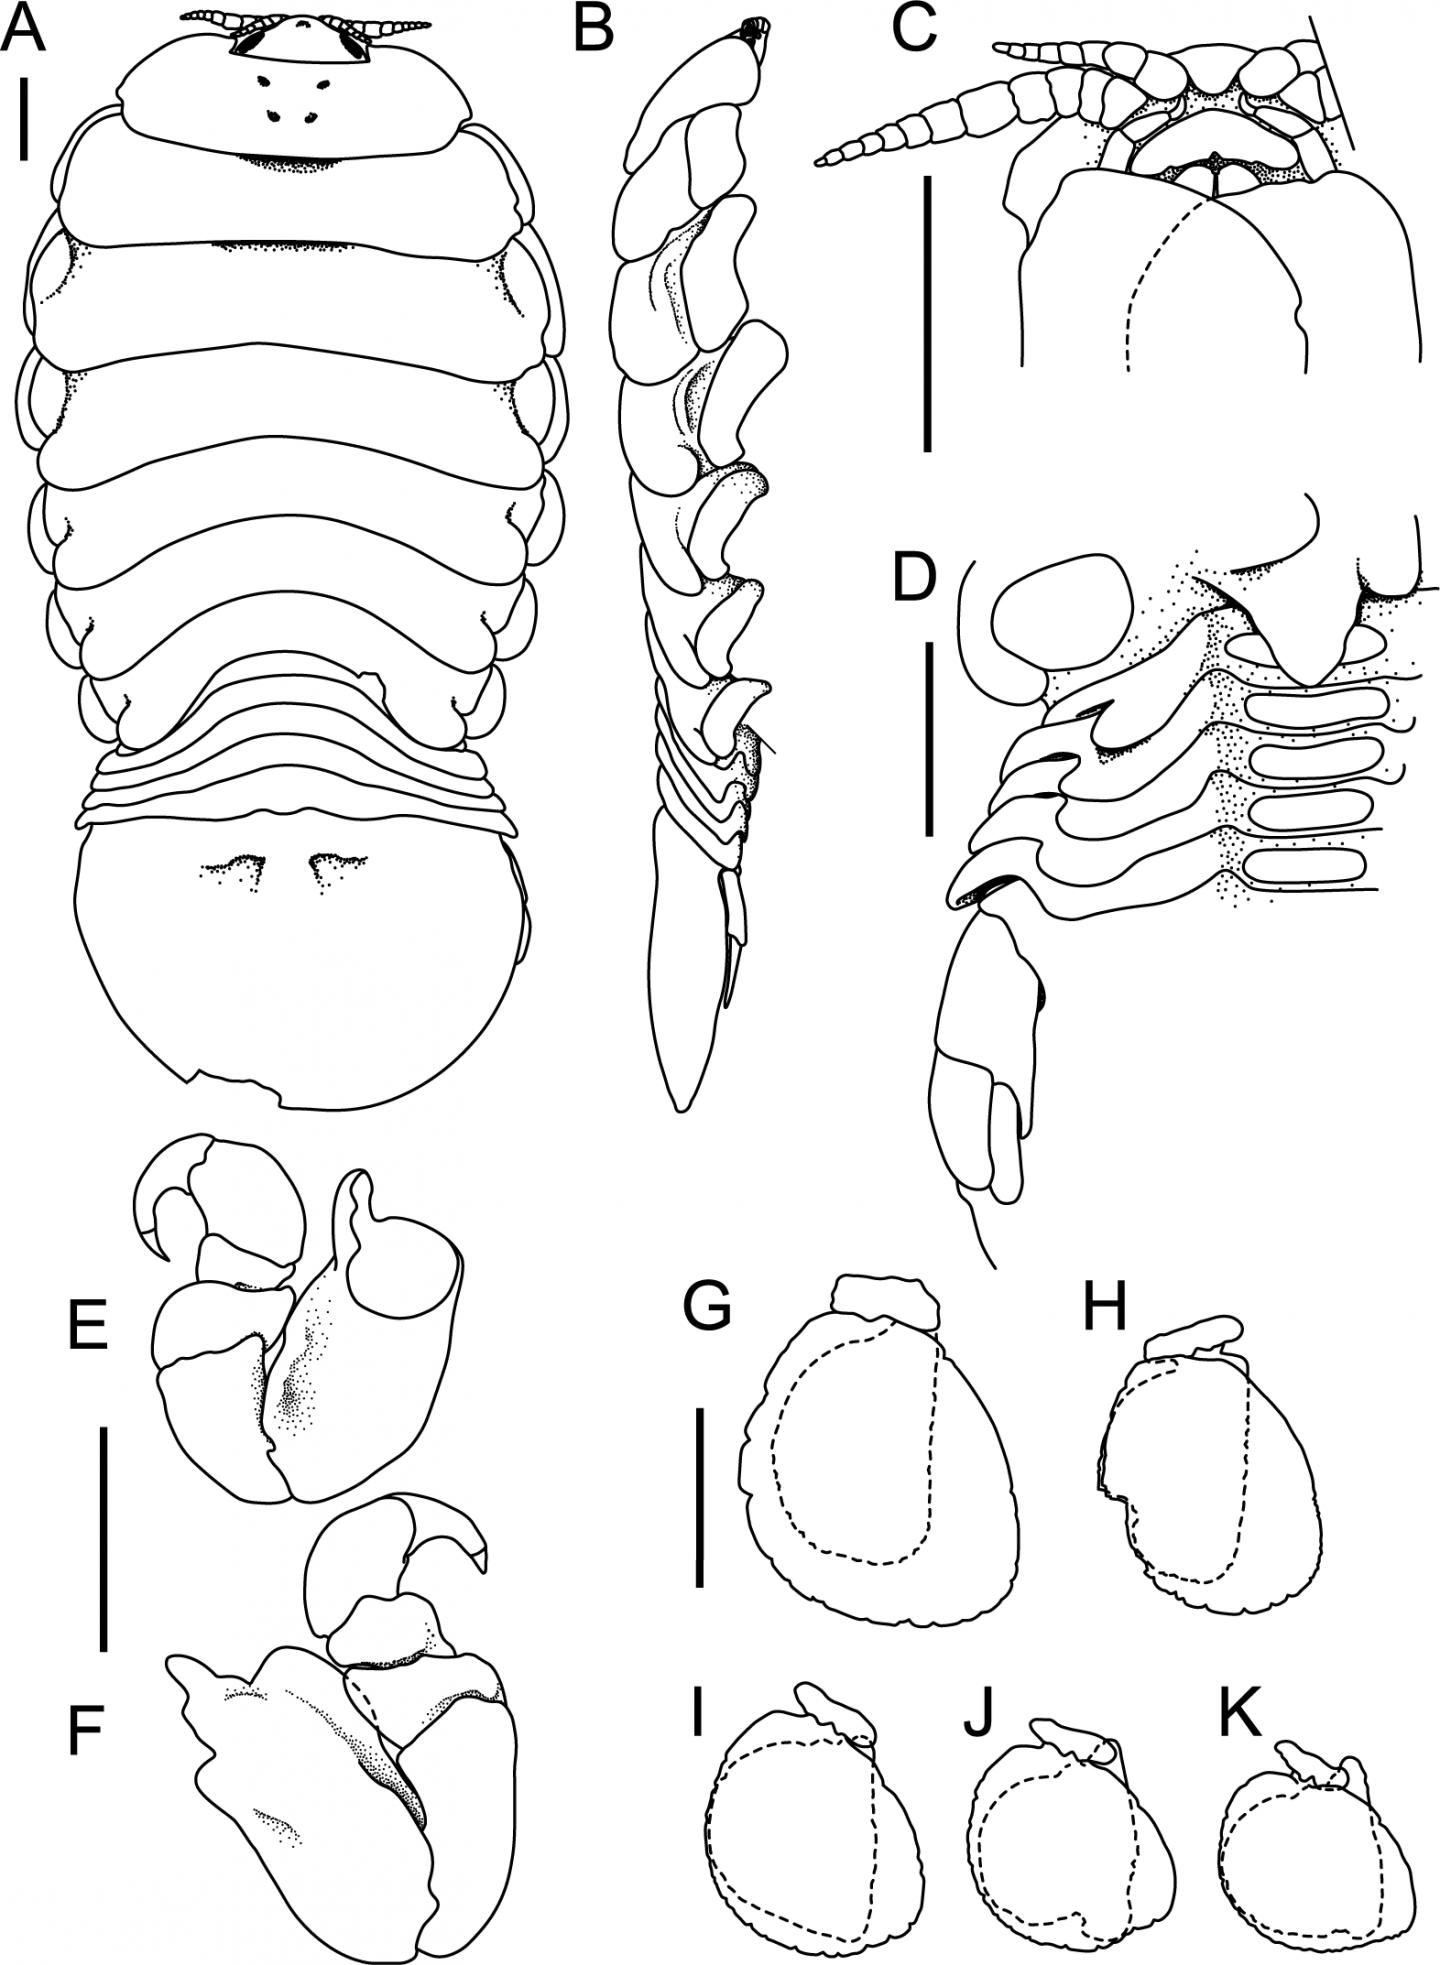 Scientific line diagram of Elthusa splendida